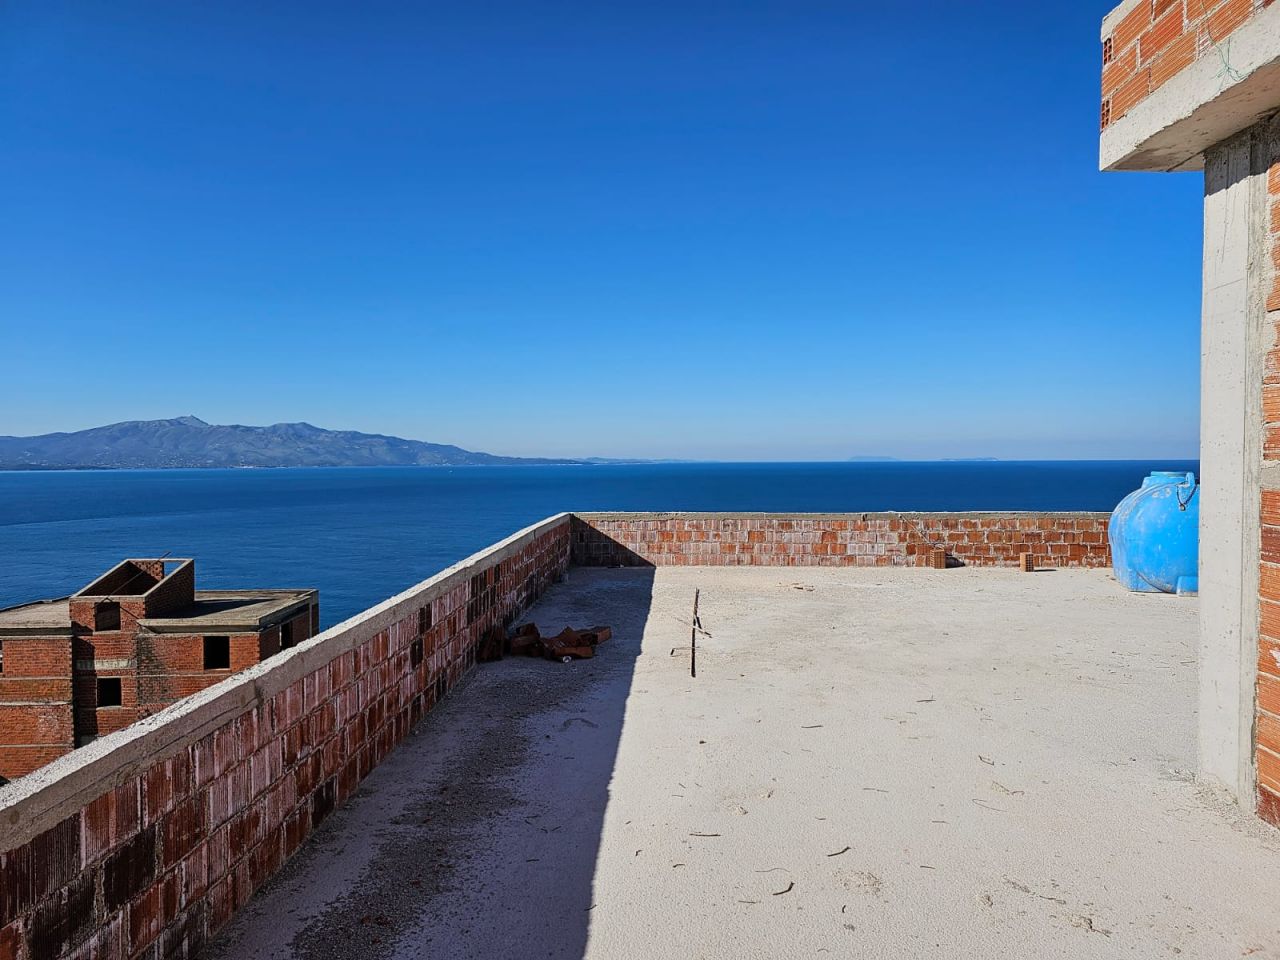 Nowe I Piękne Mieszkanie Na Sprzedaż W Sarandzie W Albanii Zlokalizowane W Nowym Budynku Z Wyjątkową Lokalizacją Blisko Plaży